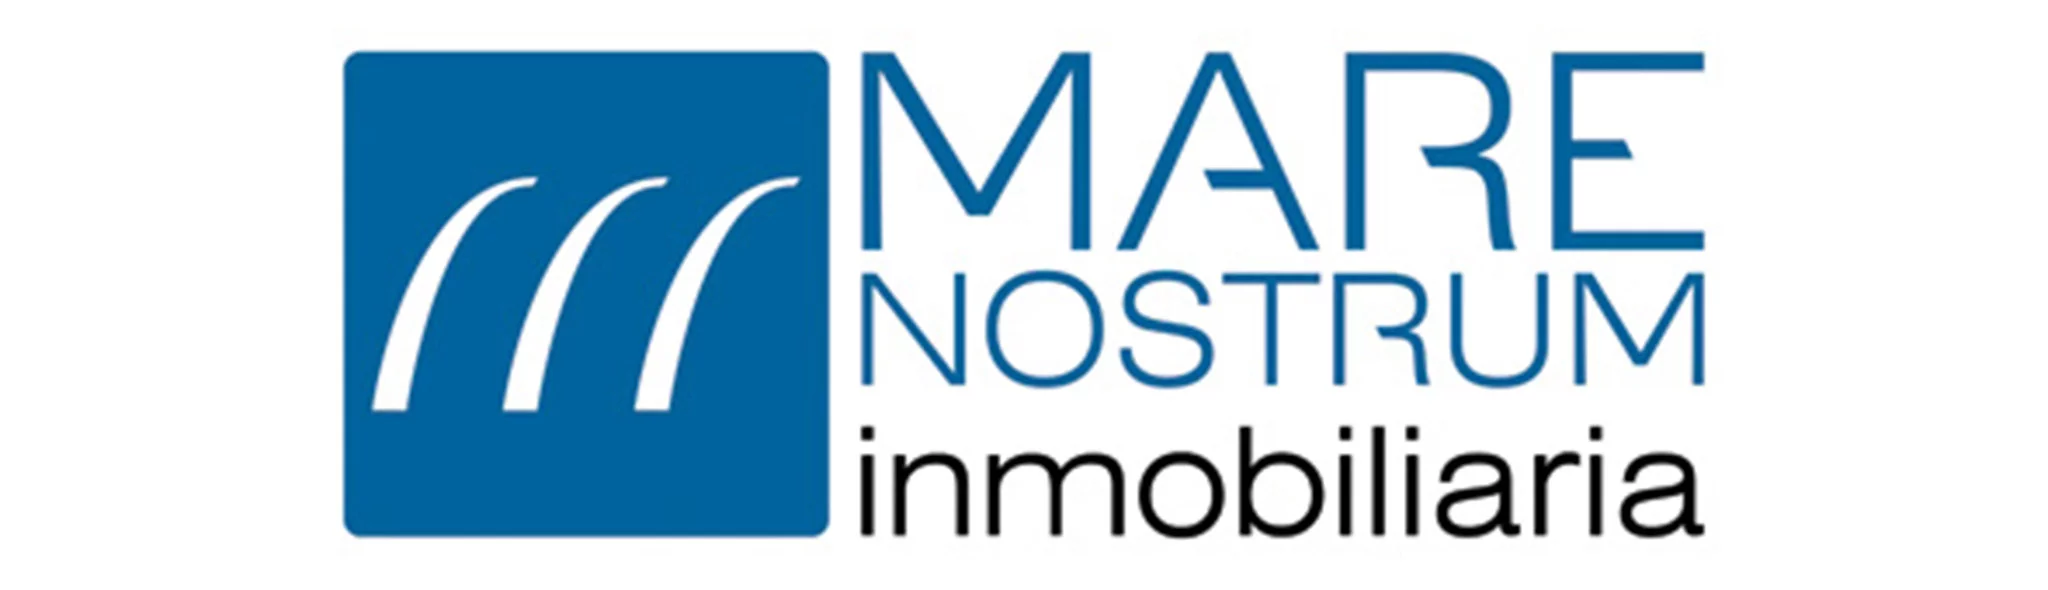 Logotipo Mare Nostrum Inmobiliaria